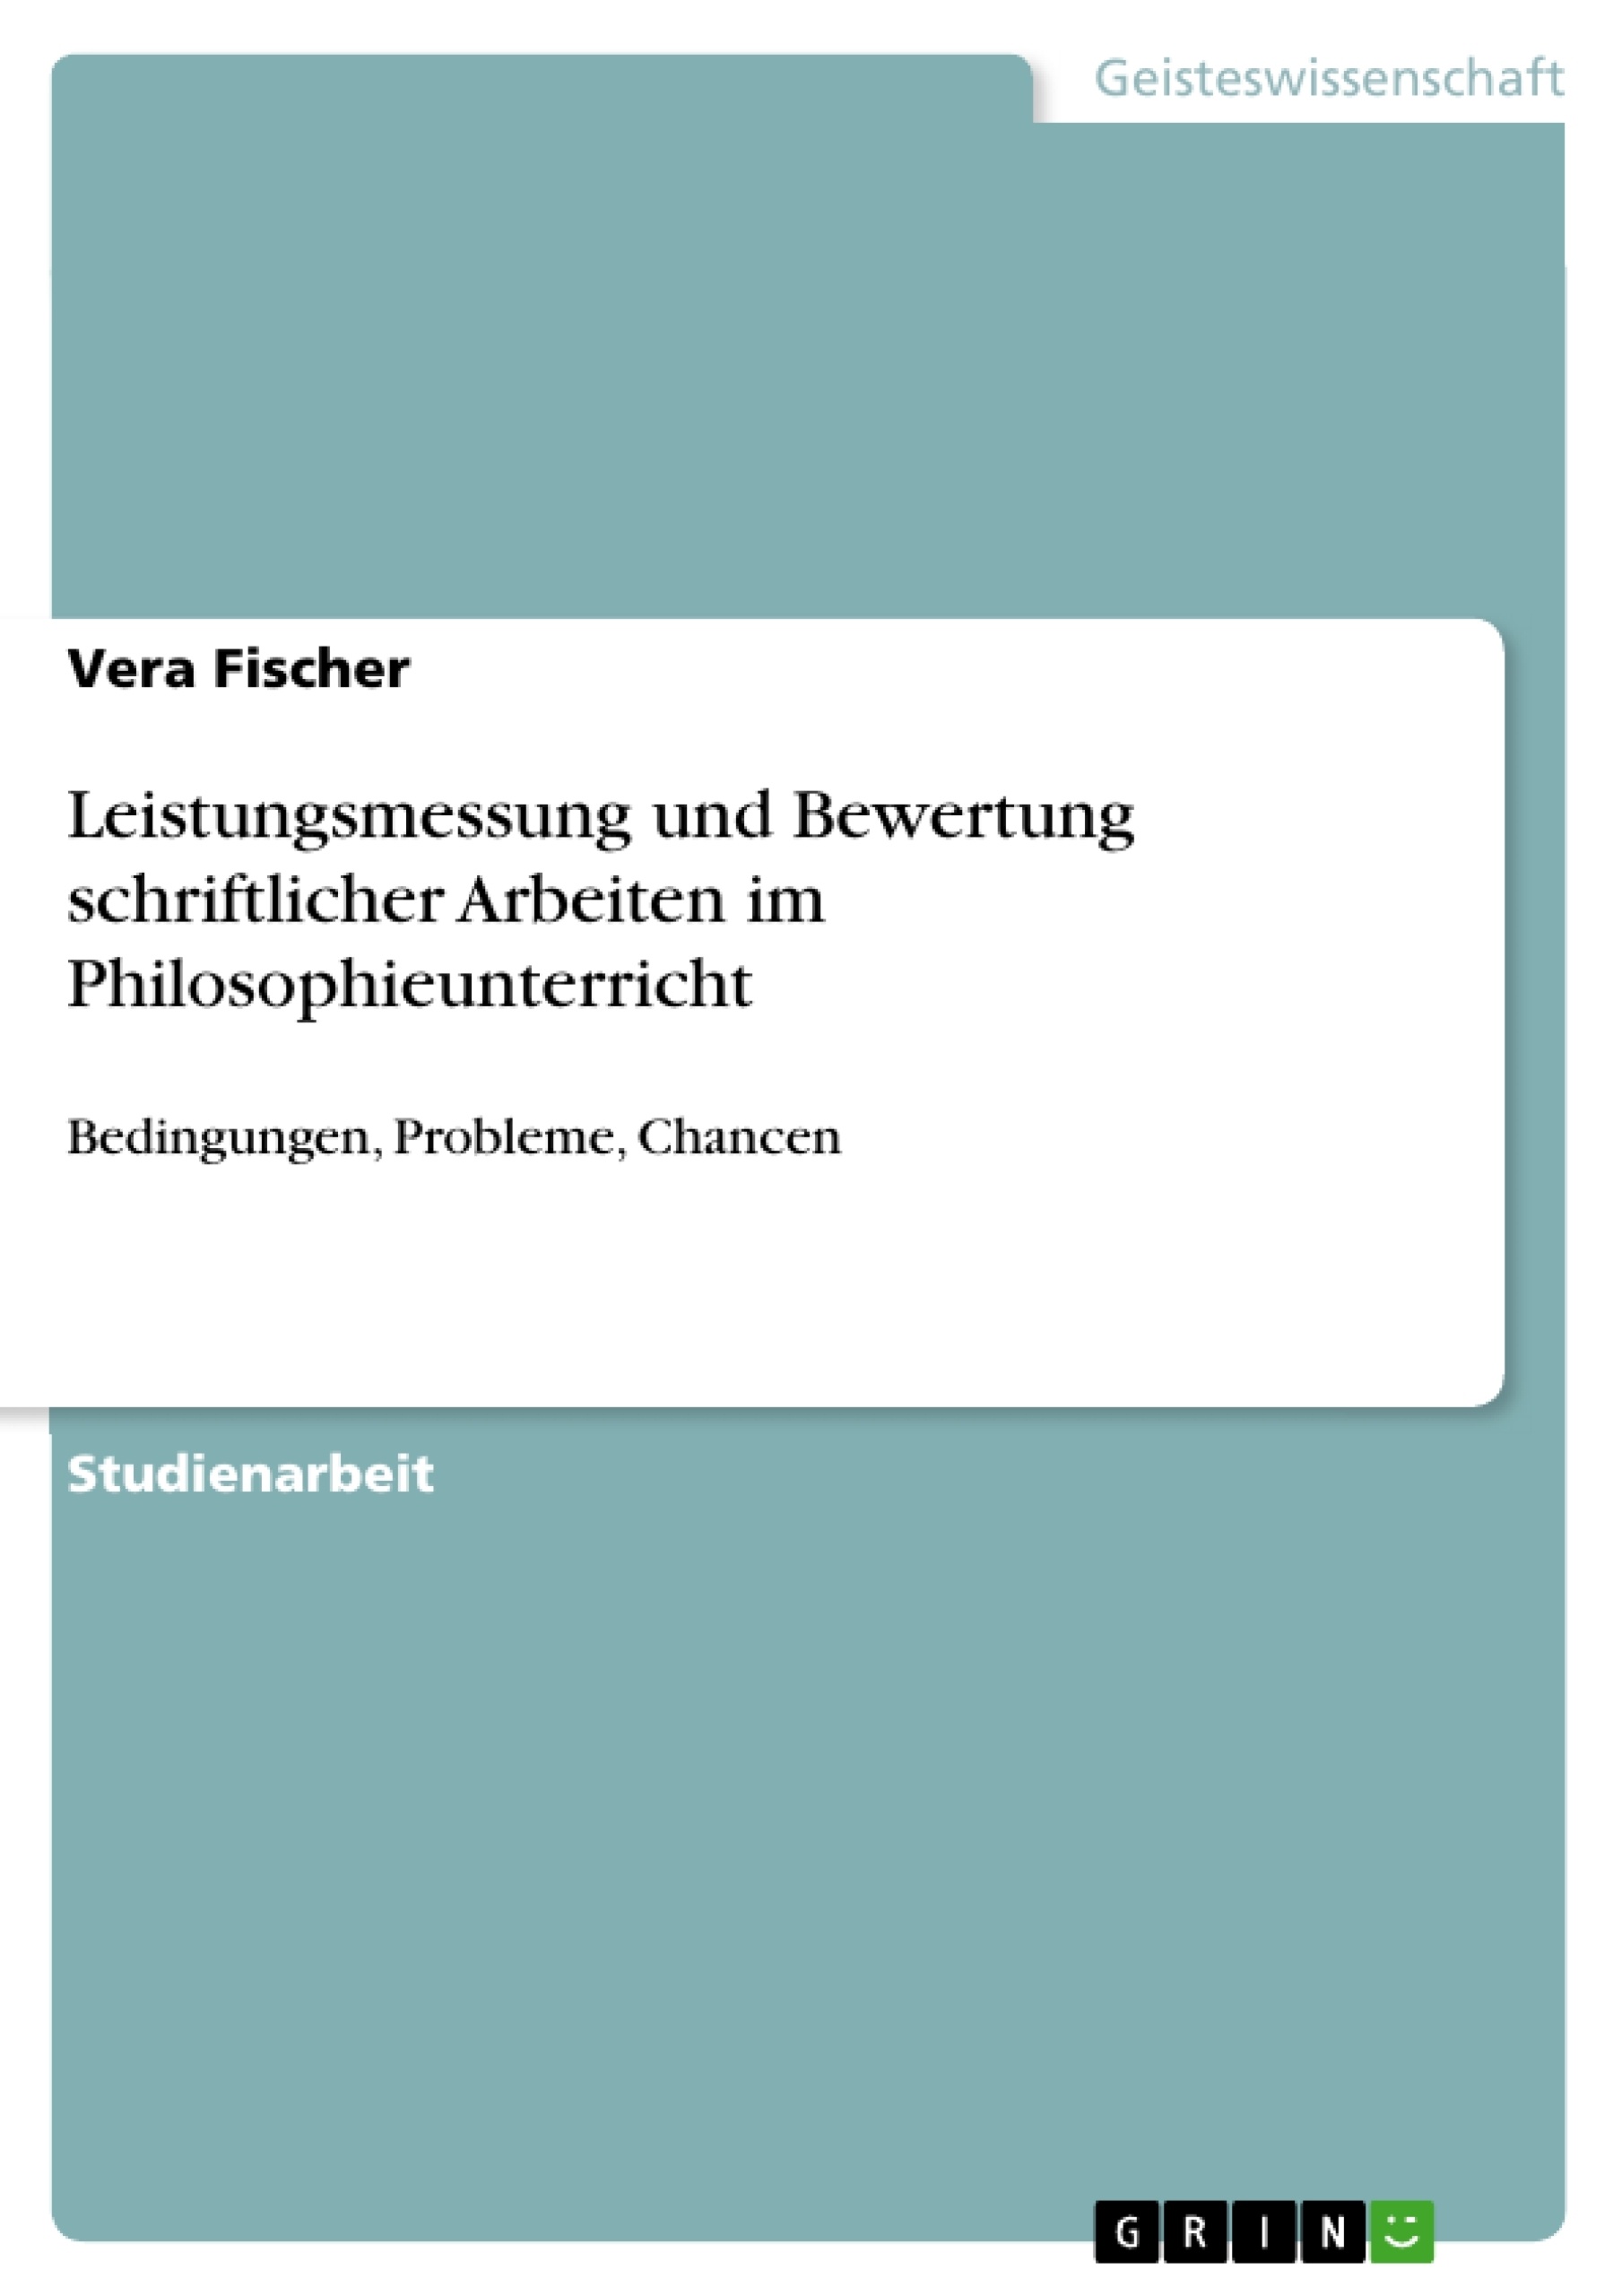 Title: Leistungsmessung und Bewertung schriftlicher Arbeiten im Philosophieunterricht